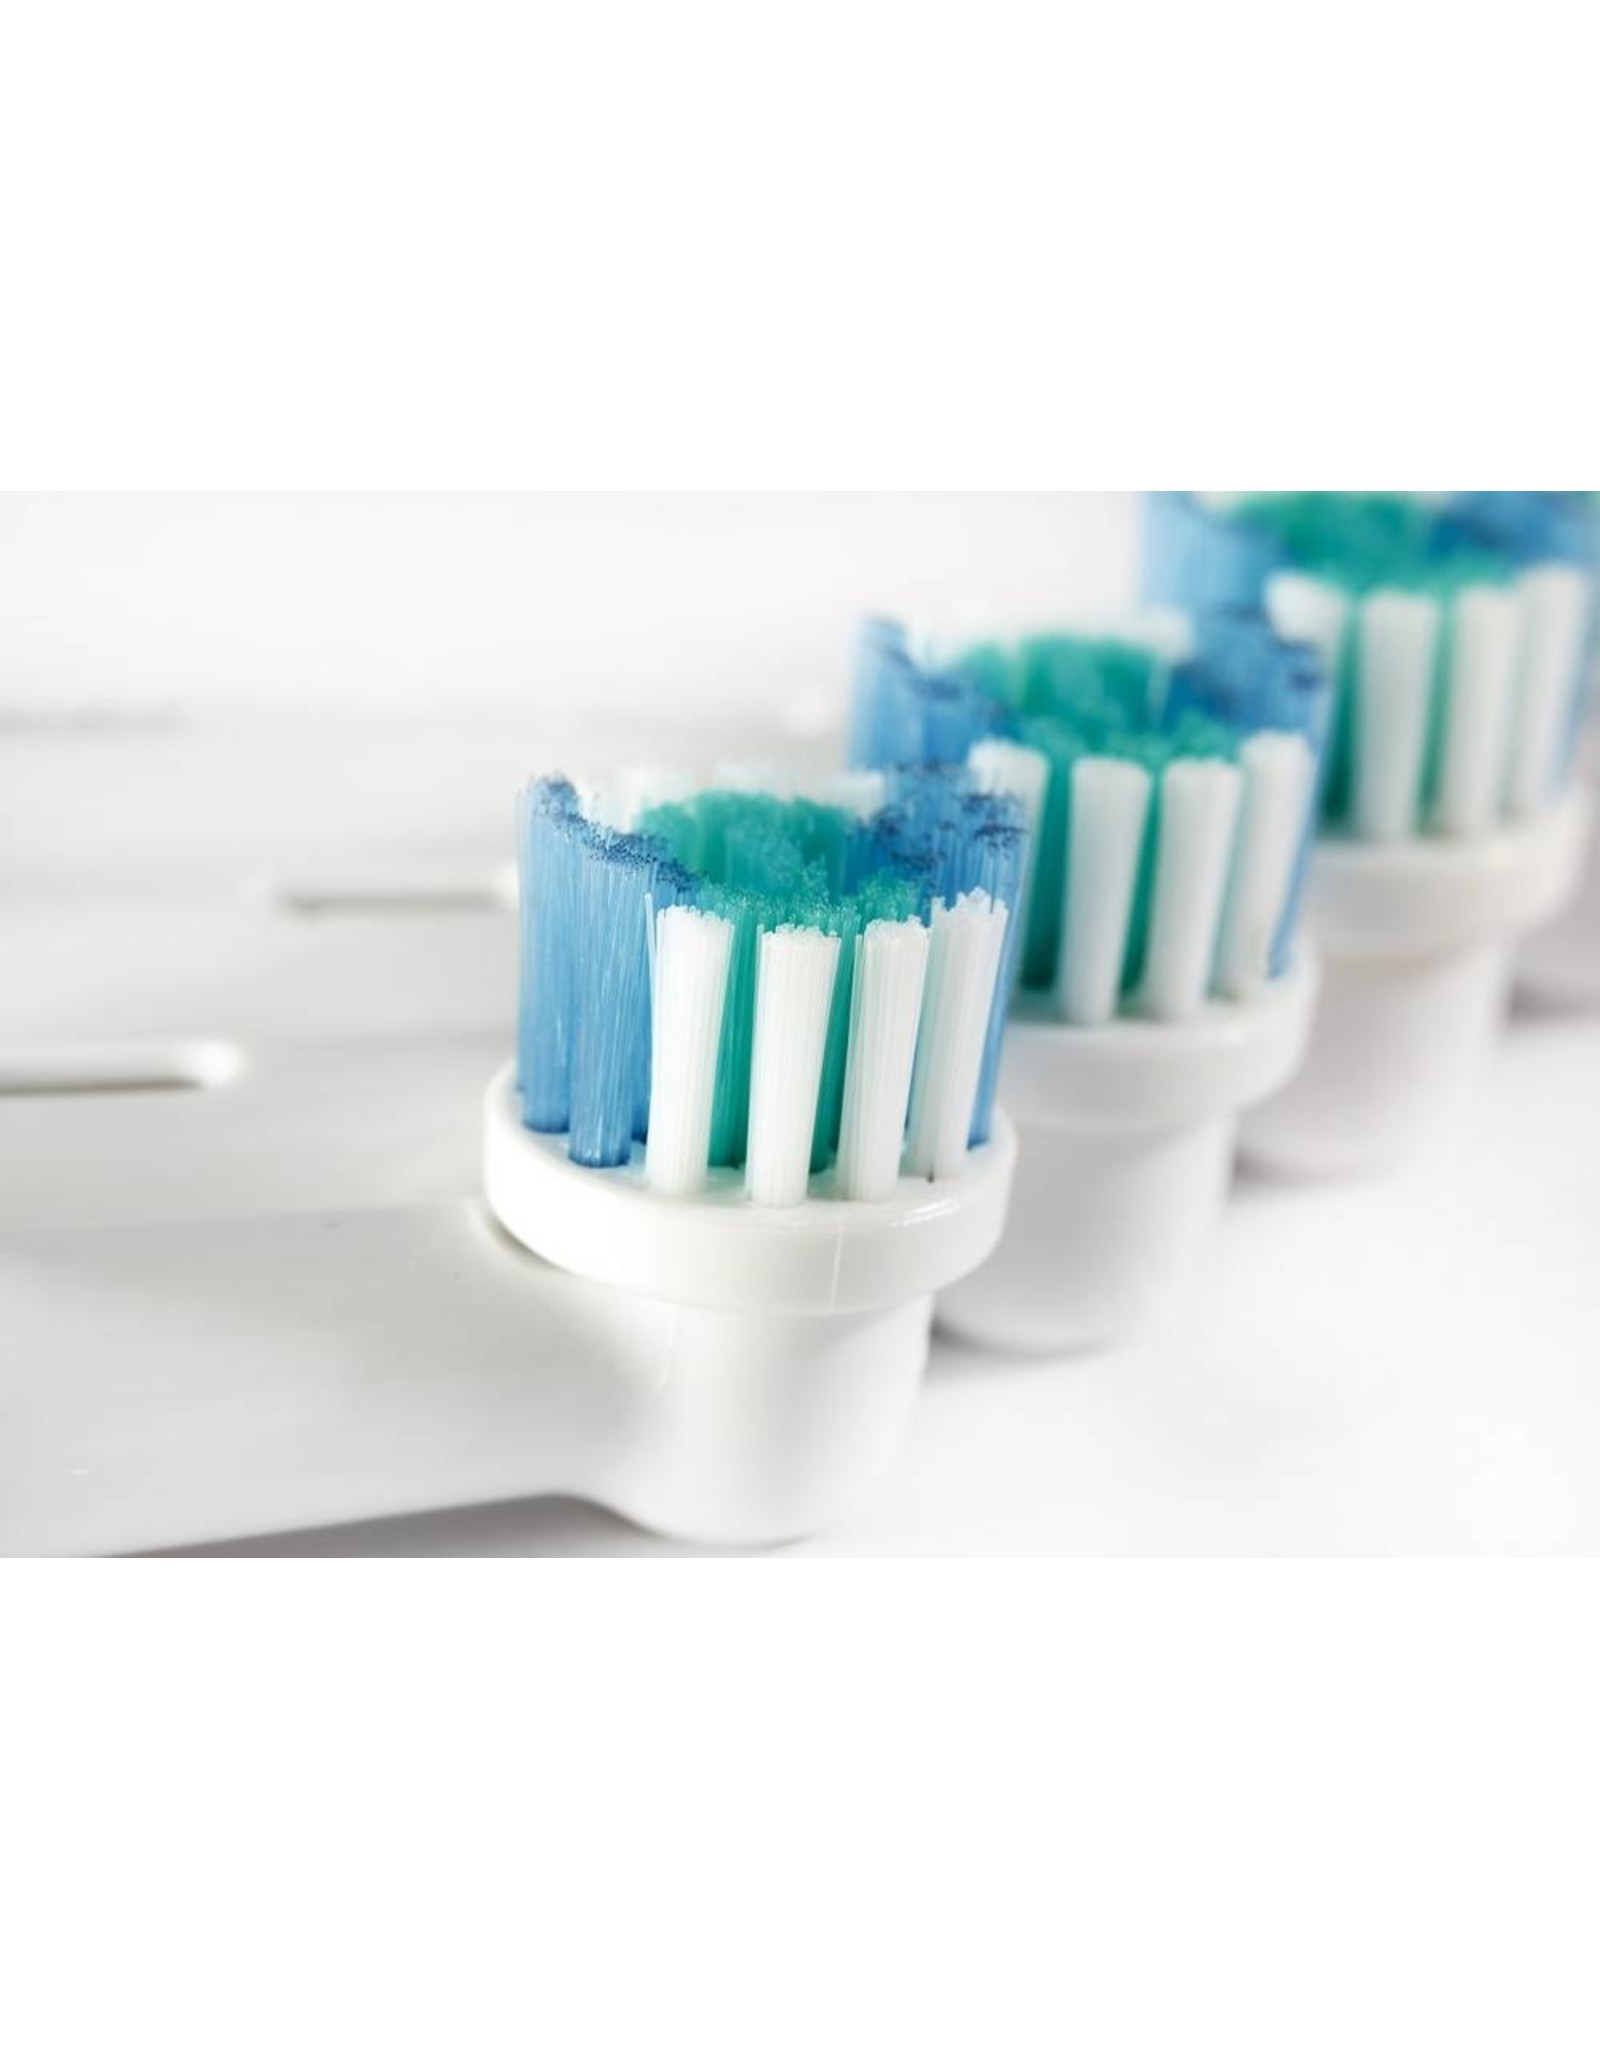 8 Aufsteckbürsten für elektrische Zahnbürsten von Oral-B  von Braun  Ersatzbürsten Aufsätze (kostenloser Versand)